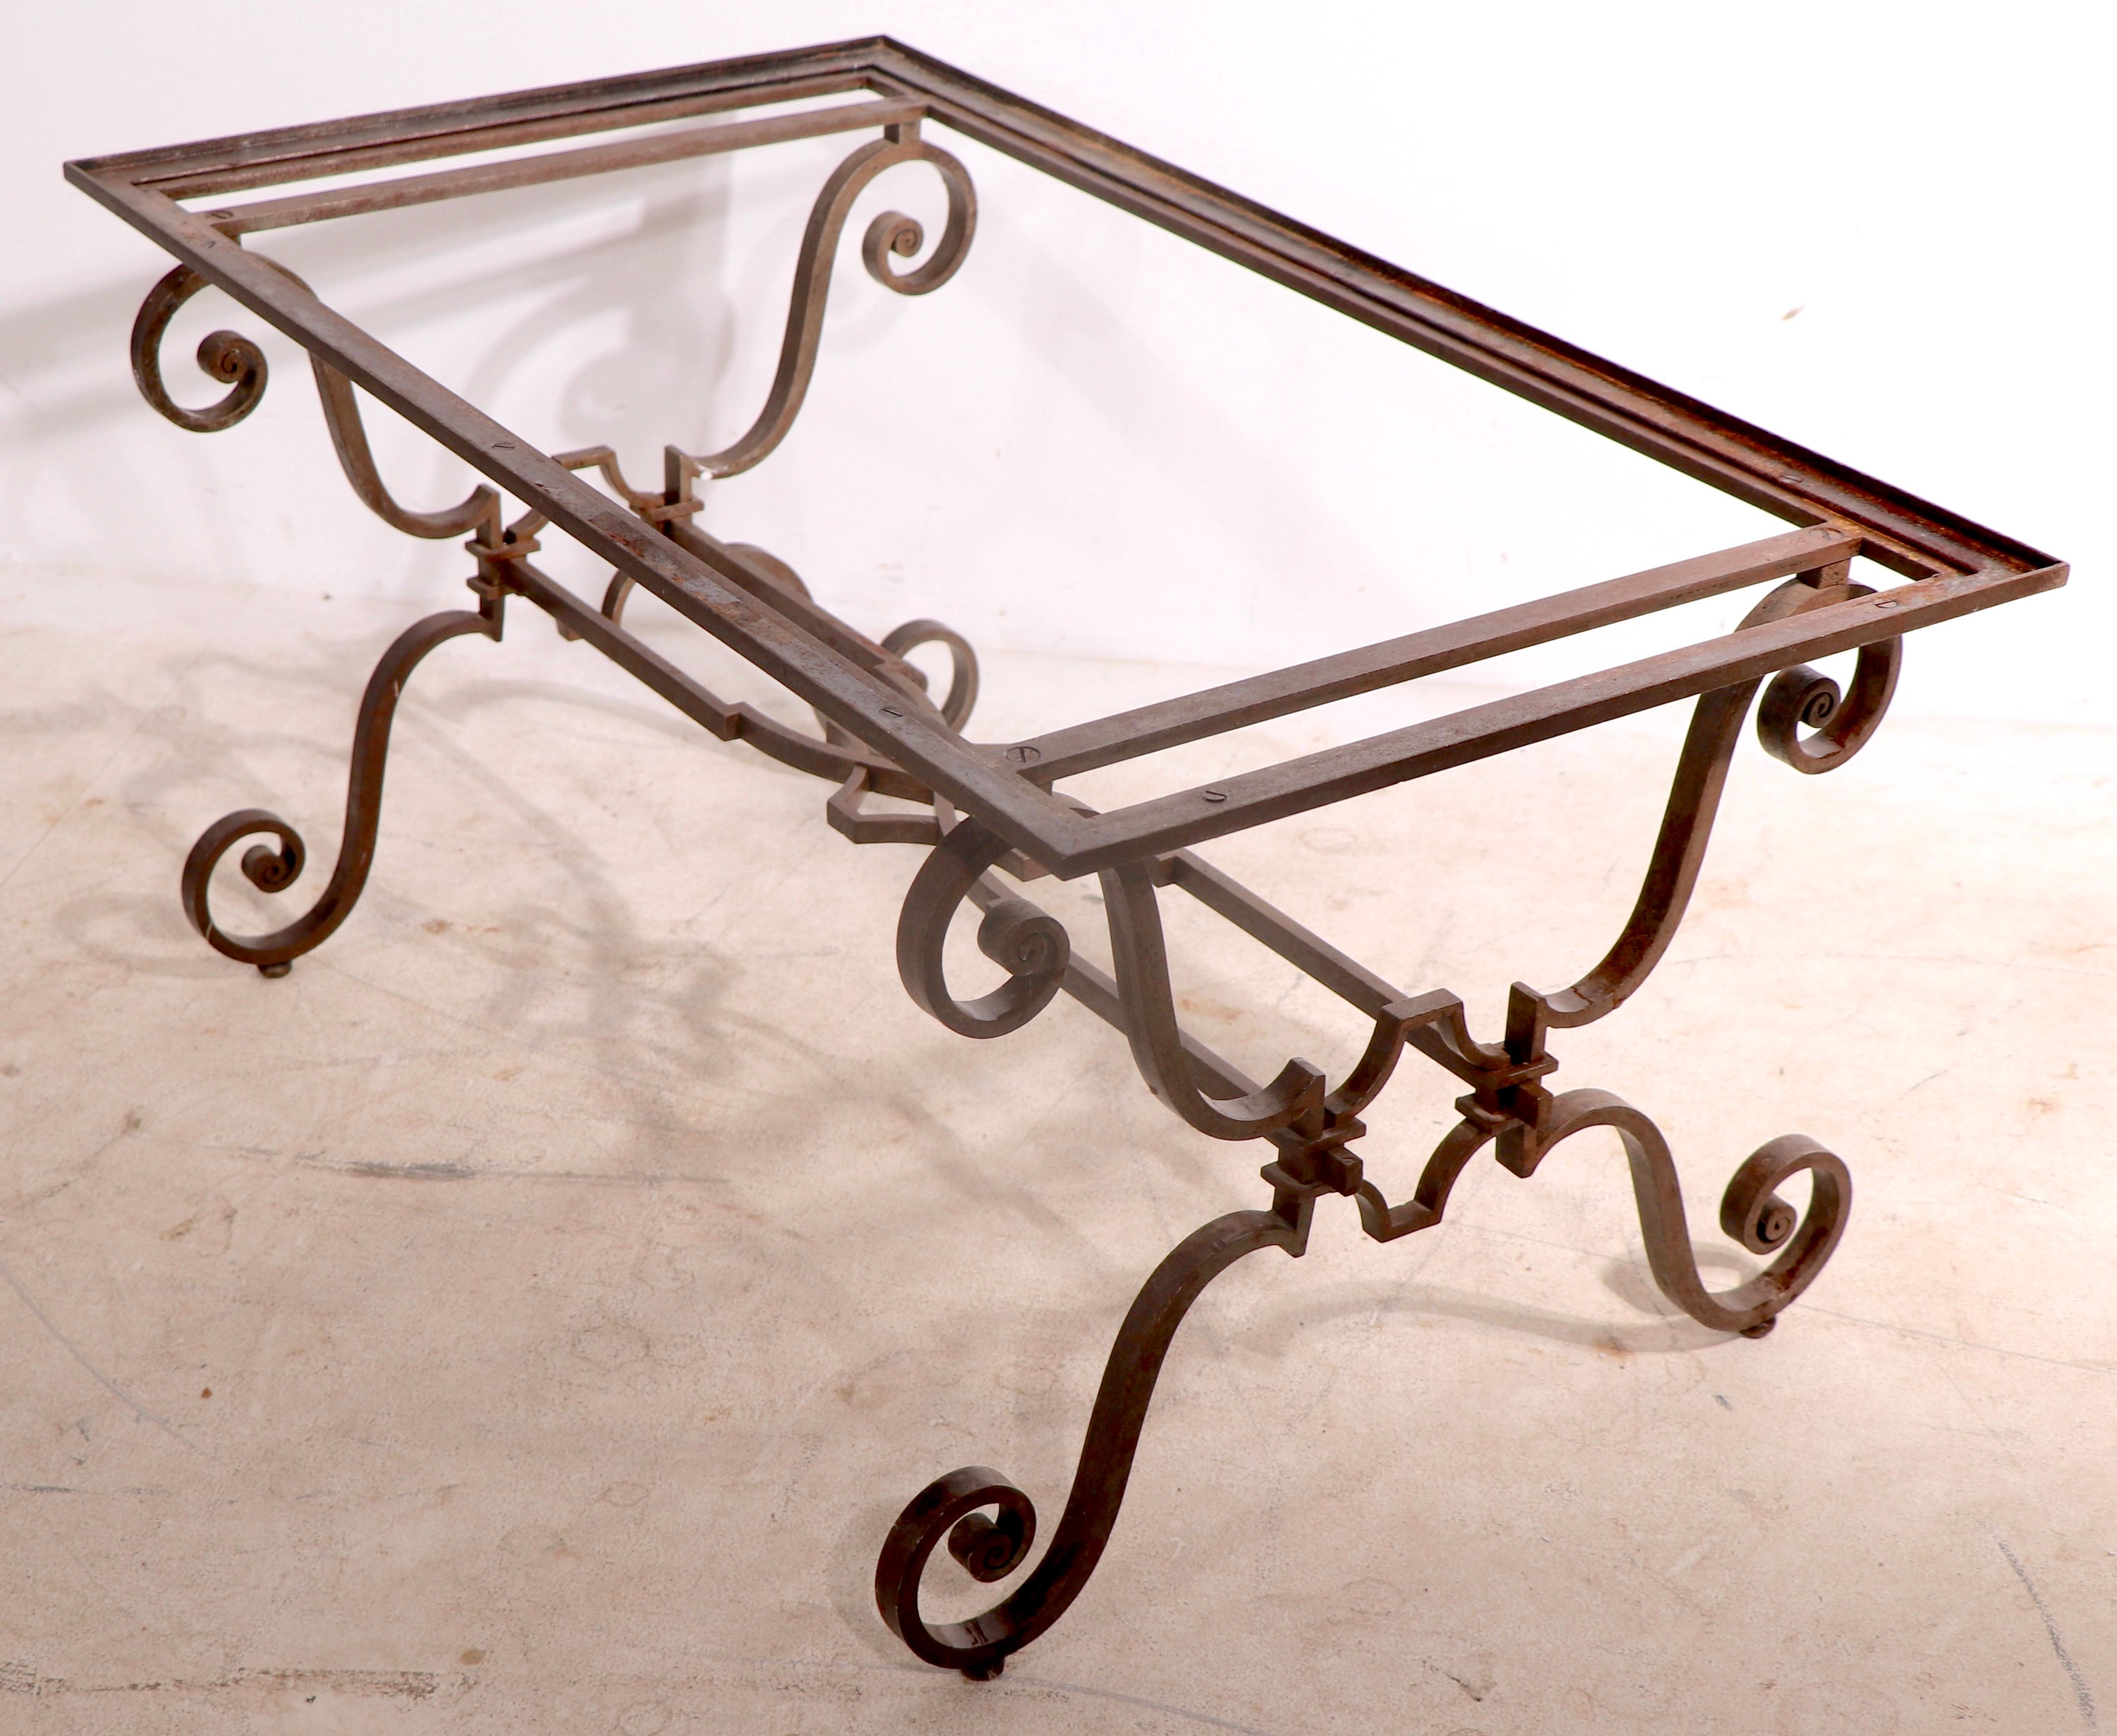 Exquise base de table de travail en métal Art déco, attribuée à Raymond Subes. Ce modèle était probablement doté d'un plateau en marbre, aujourd'hui disparu. La base de la table est en très bon état, d'origine et intacte, montrant une certaine usure